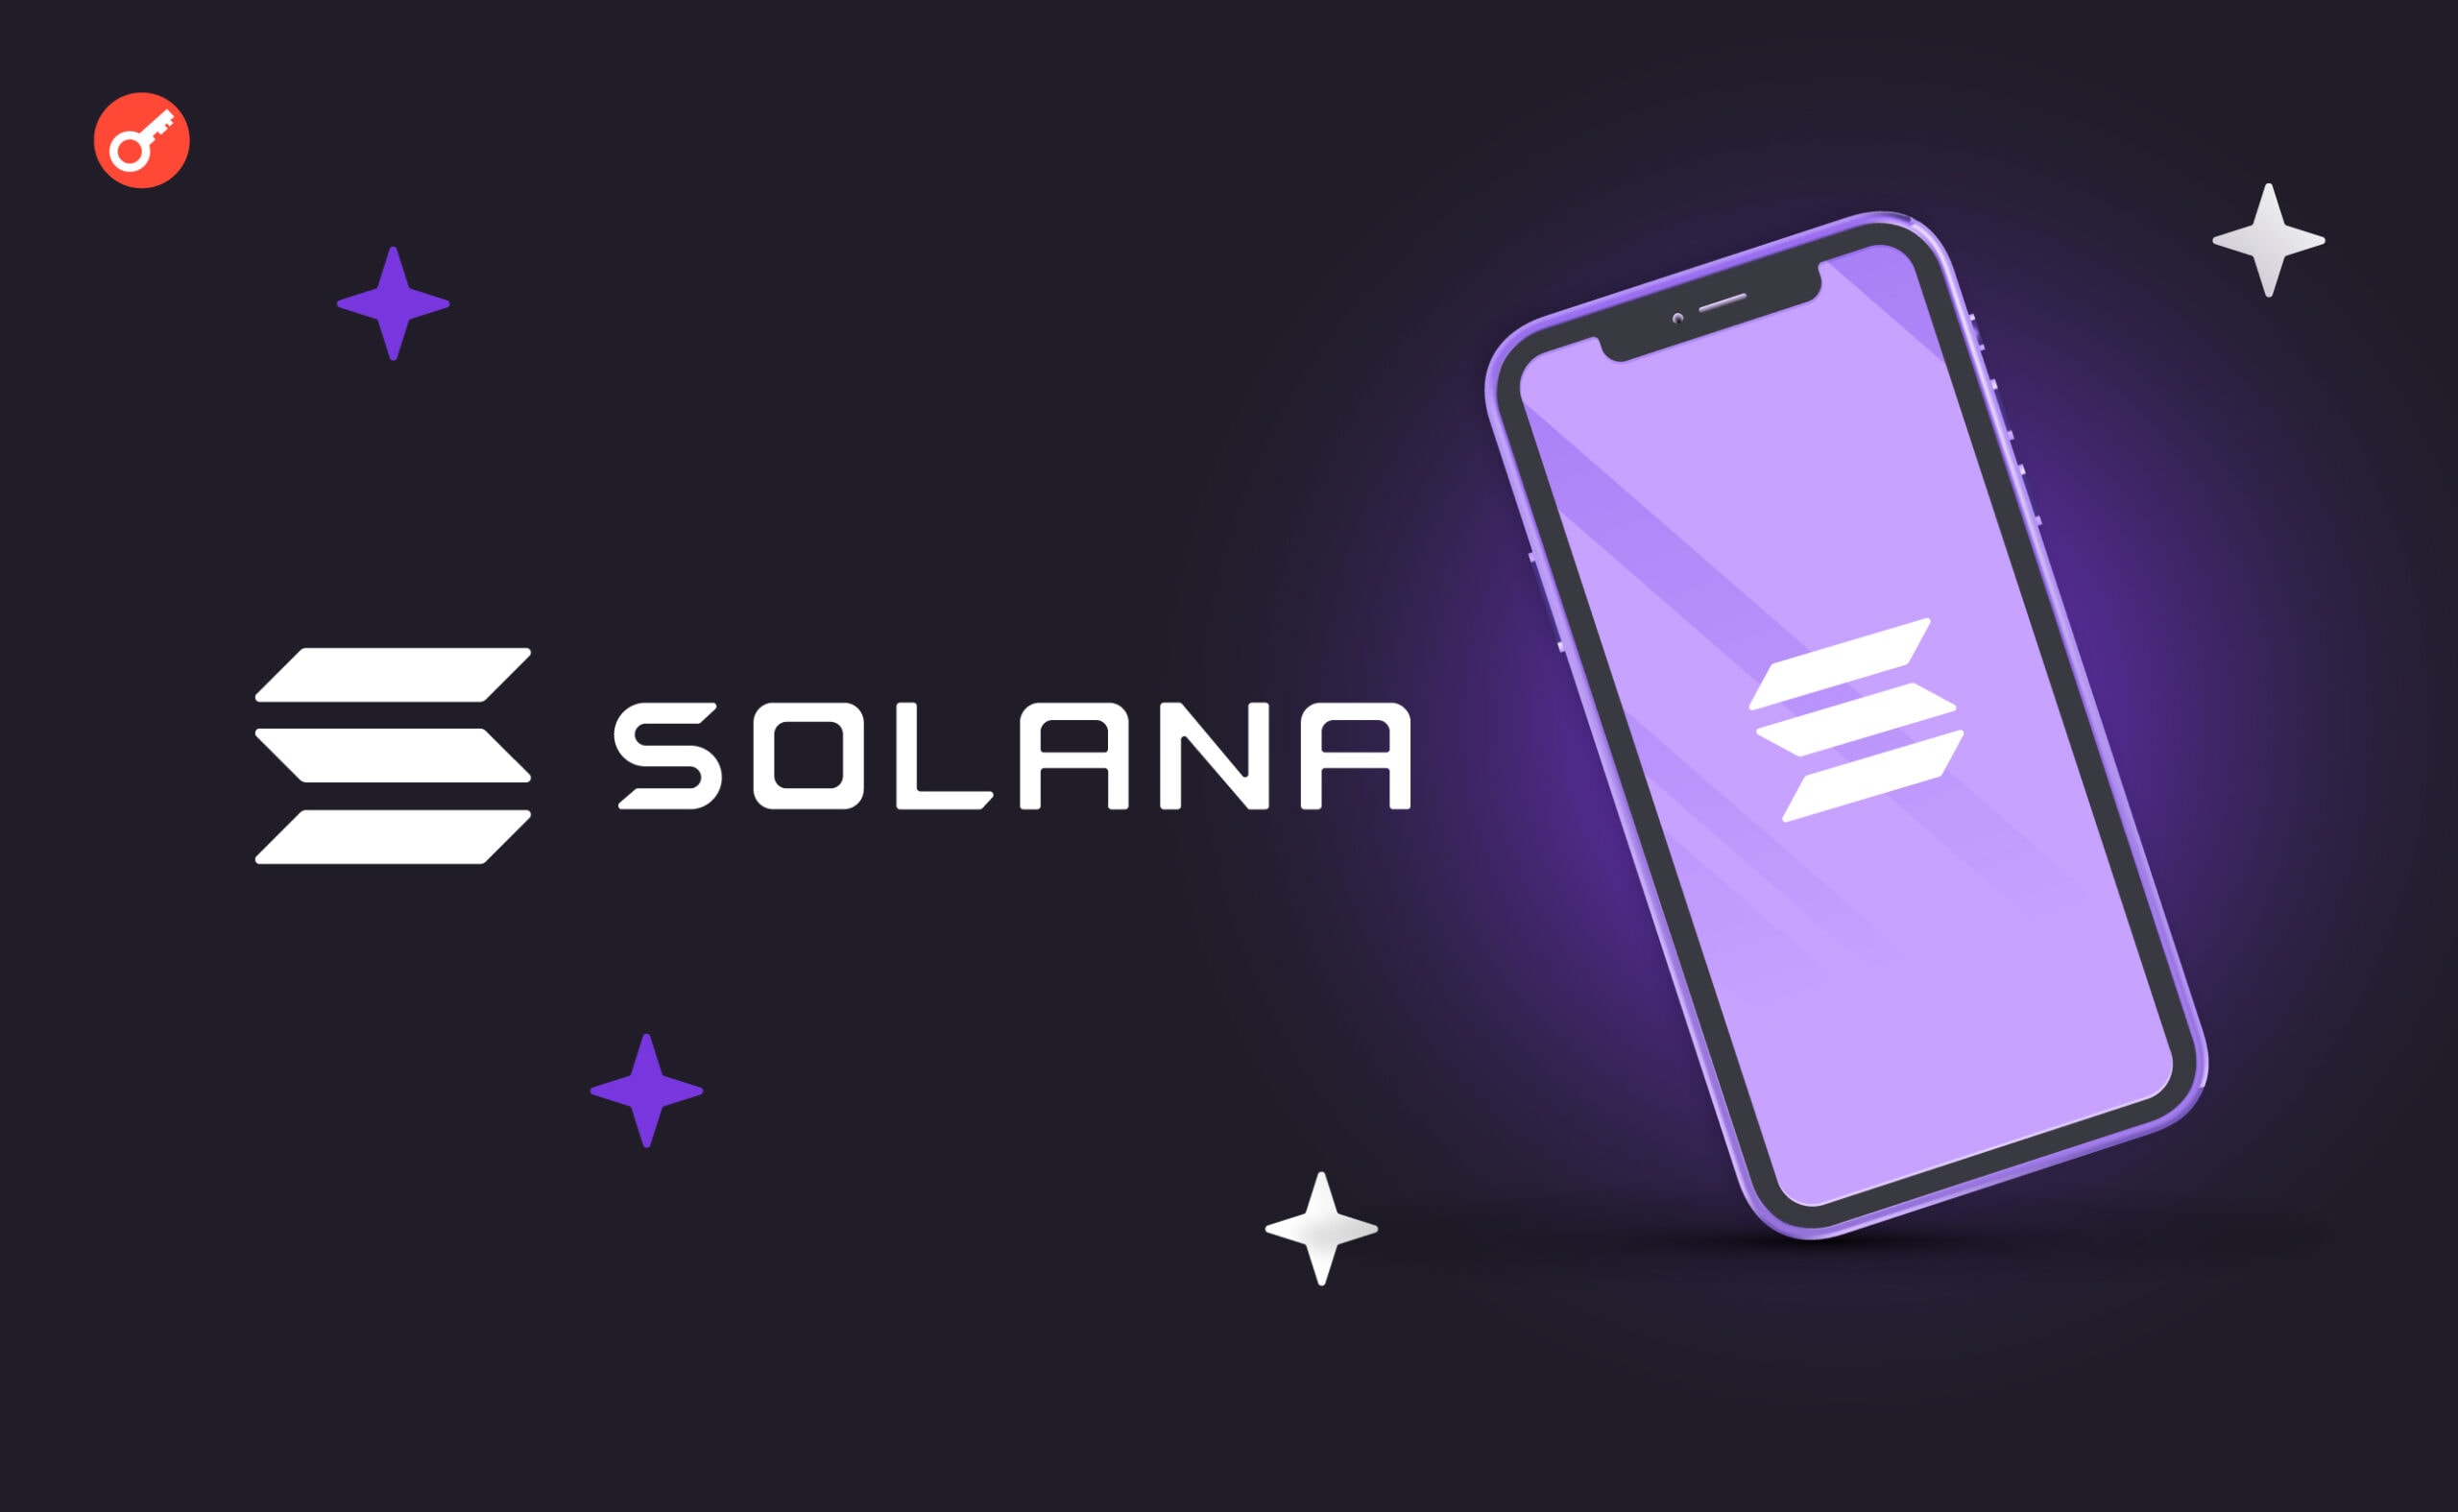 Solana Mobile получила более 100 000 предзаказов на смартфон Saga Chapter 2. Заглавный коллаж новости.